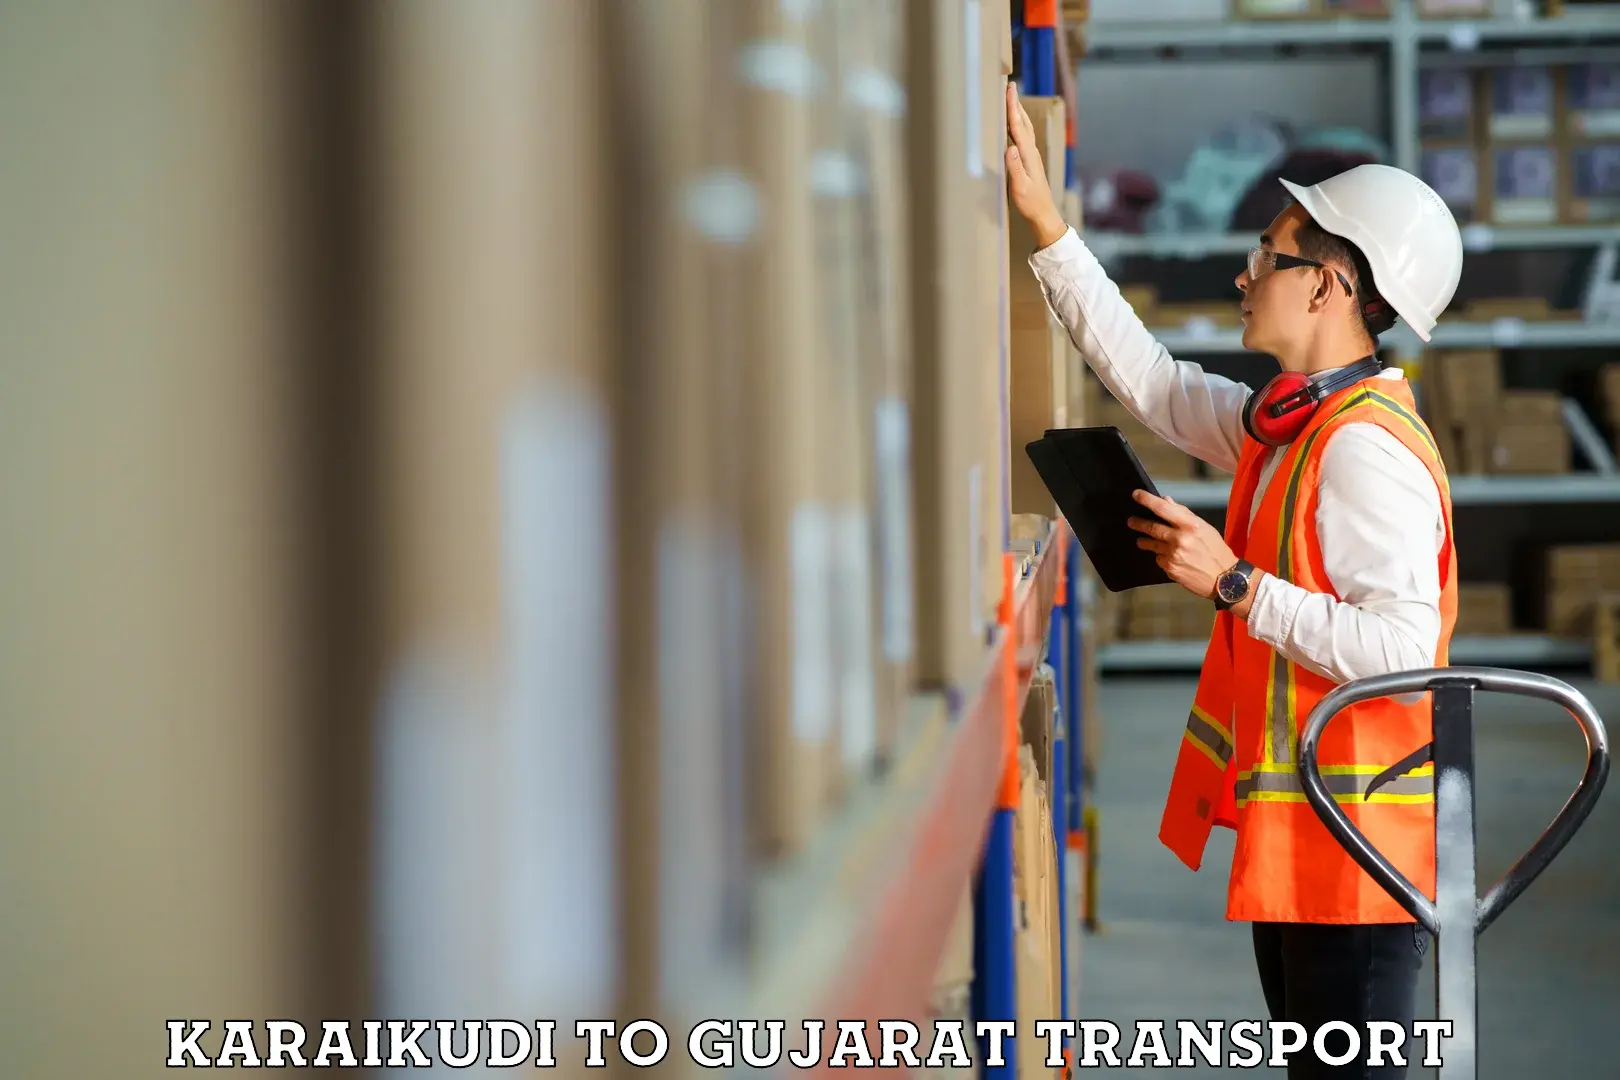 Transport in sharing Karaikudi to Surat